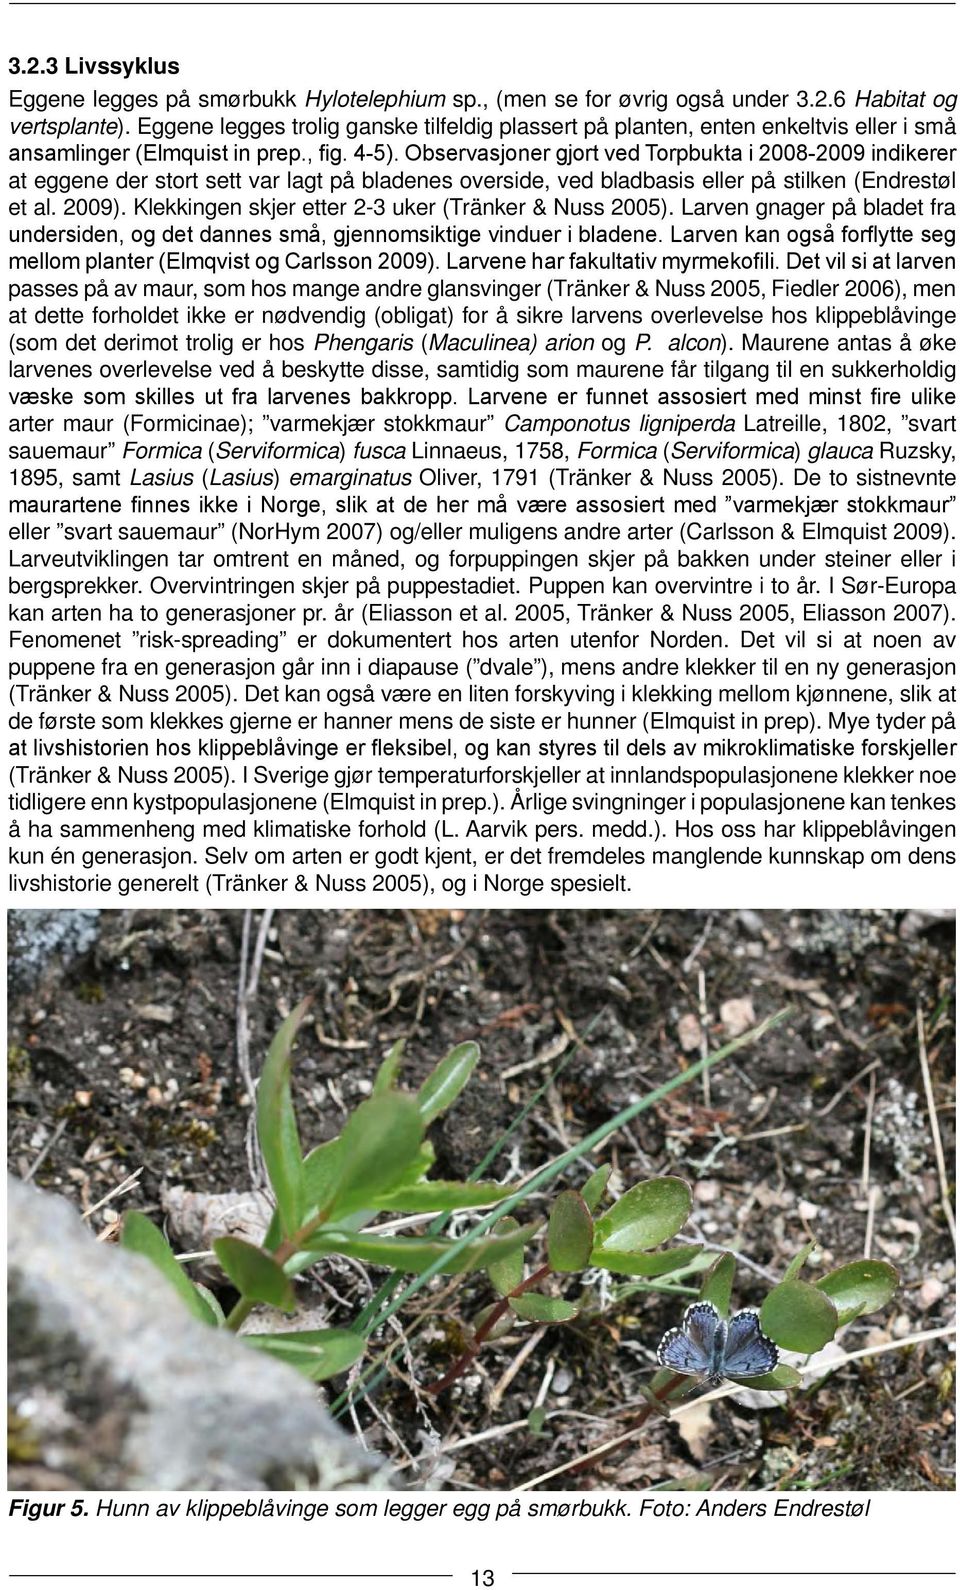 Observasjoner gjort ved Torpbukta i 2008-2009 indikerer at eggene der stort sett var lagt på bladenes overside, ved bladbasis eller på stilken (Endrestøl et al. 2009).